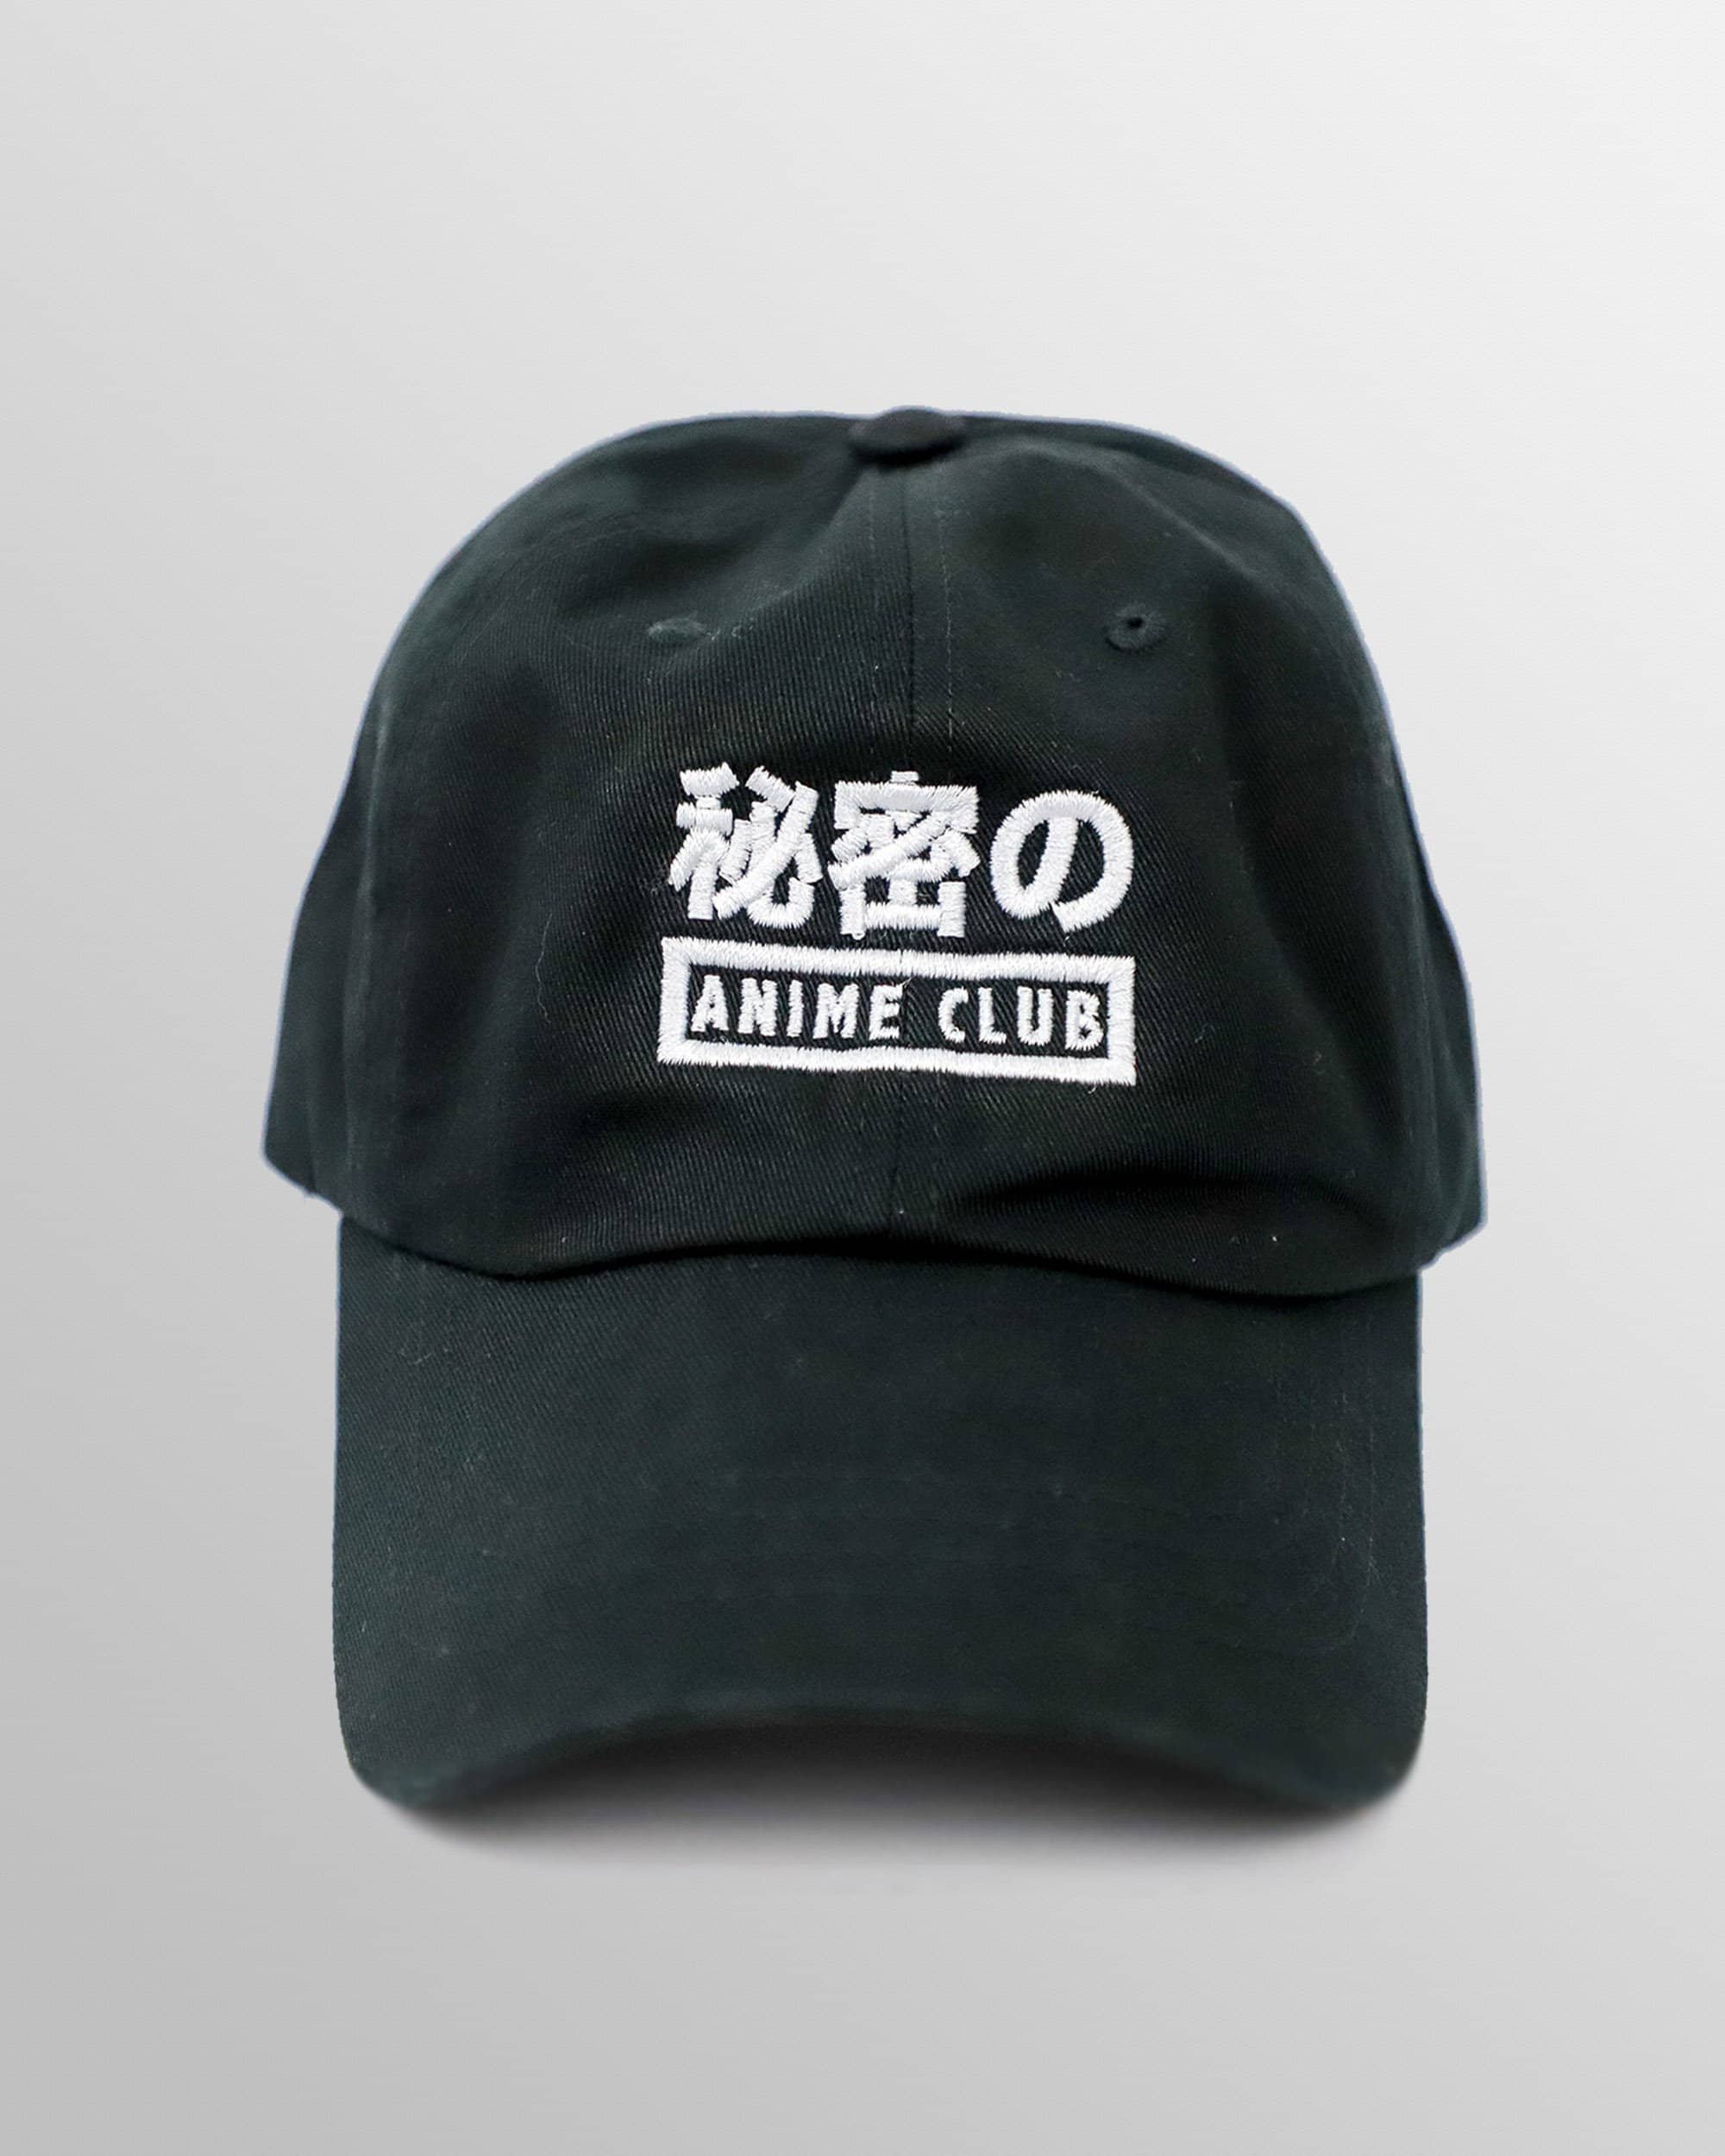 Menacing Anime Hat Inspired By Jojo - Manga SFX Hat